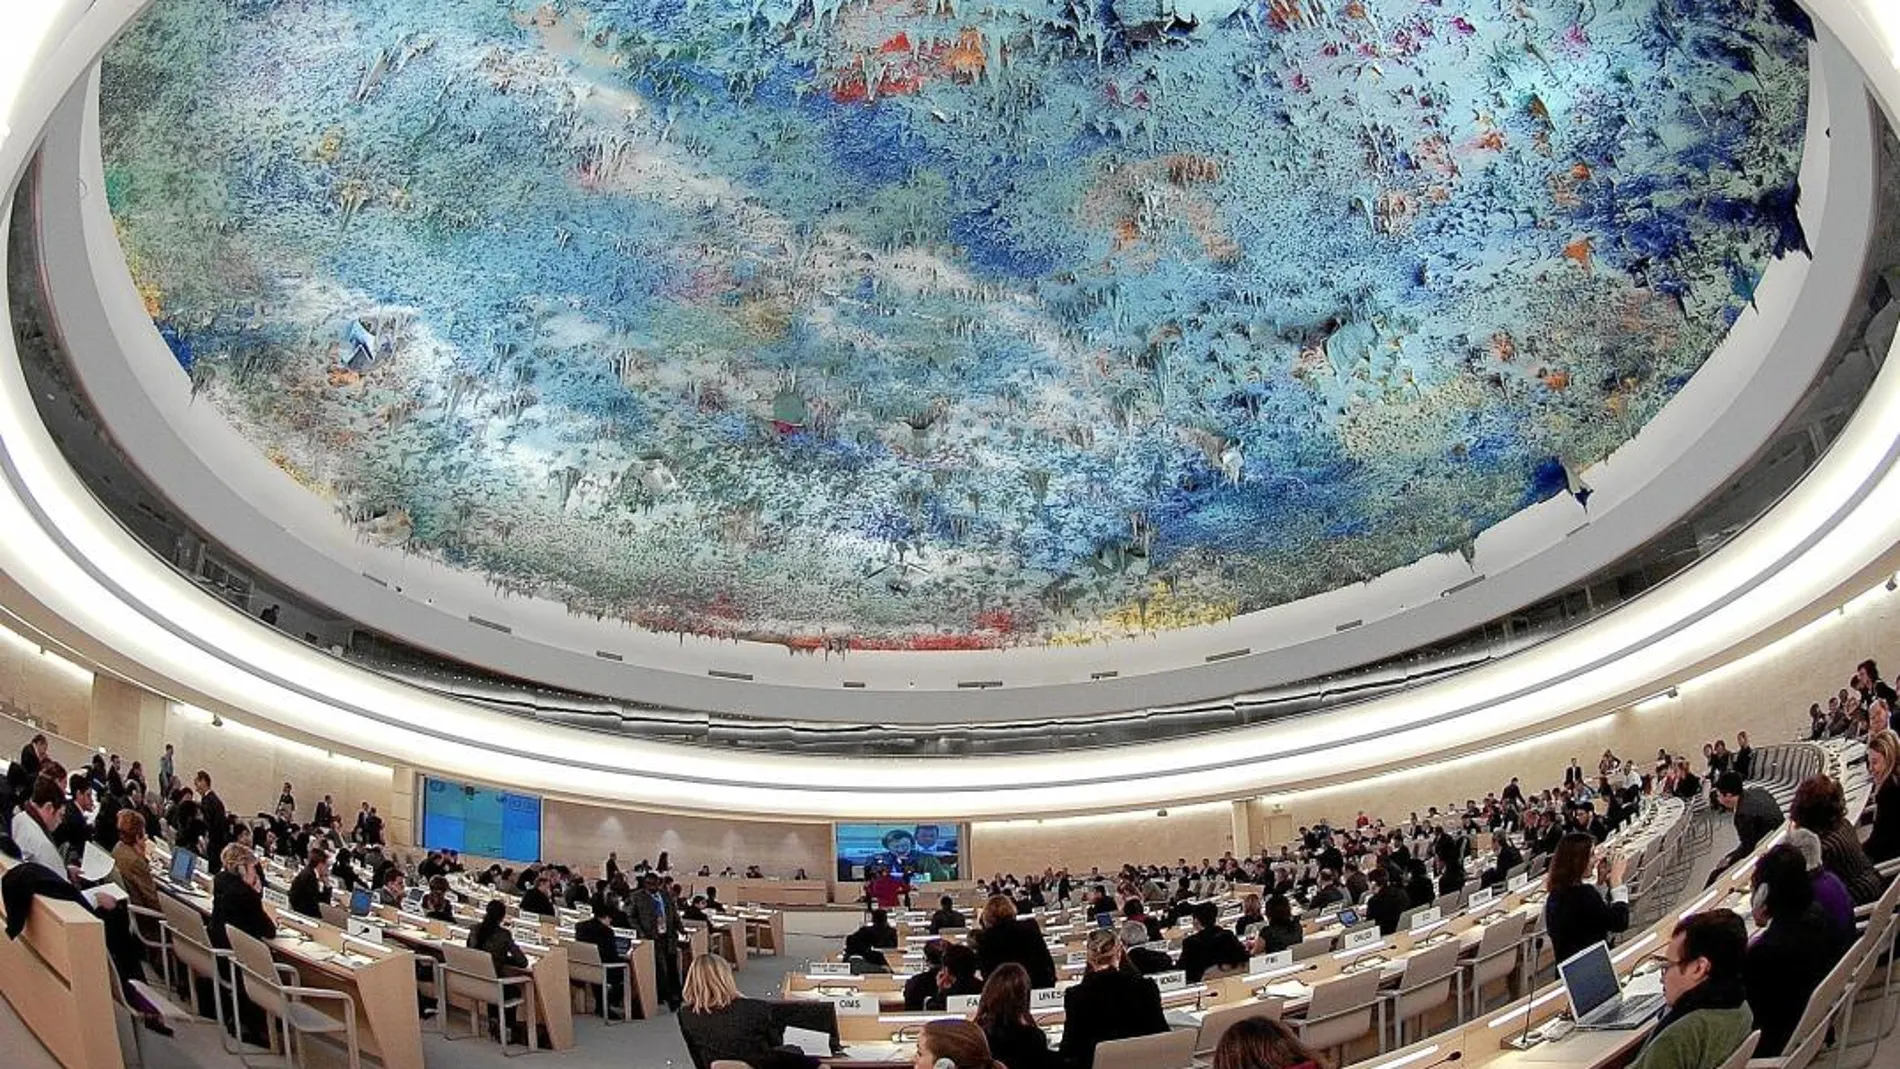 Cúpula de la Sala de los Derechos Humanos en la sede de la ONU en Ginebra, pintada por Miquel Barceló